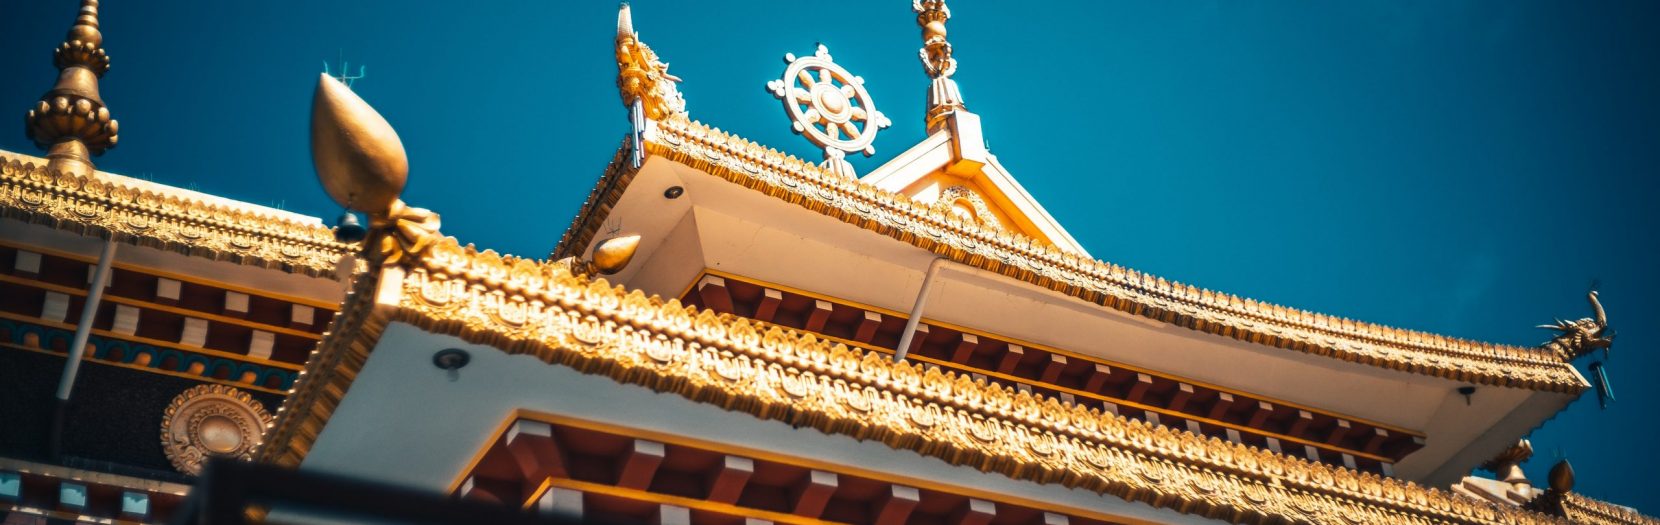 văn hoá tây tạng – nơi tận cùng của bí ẩn